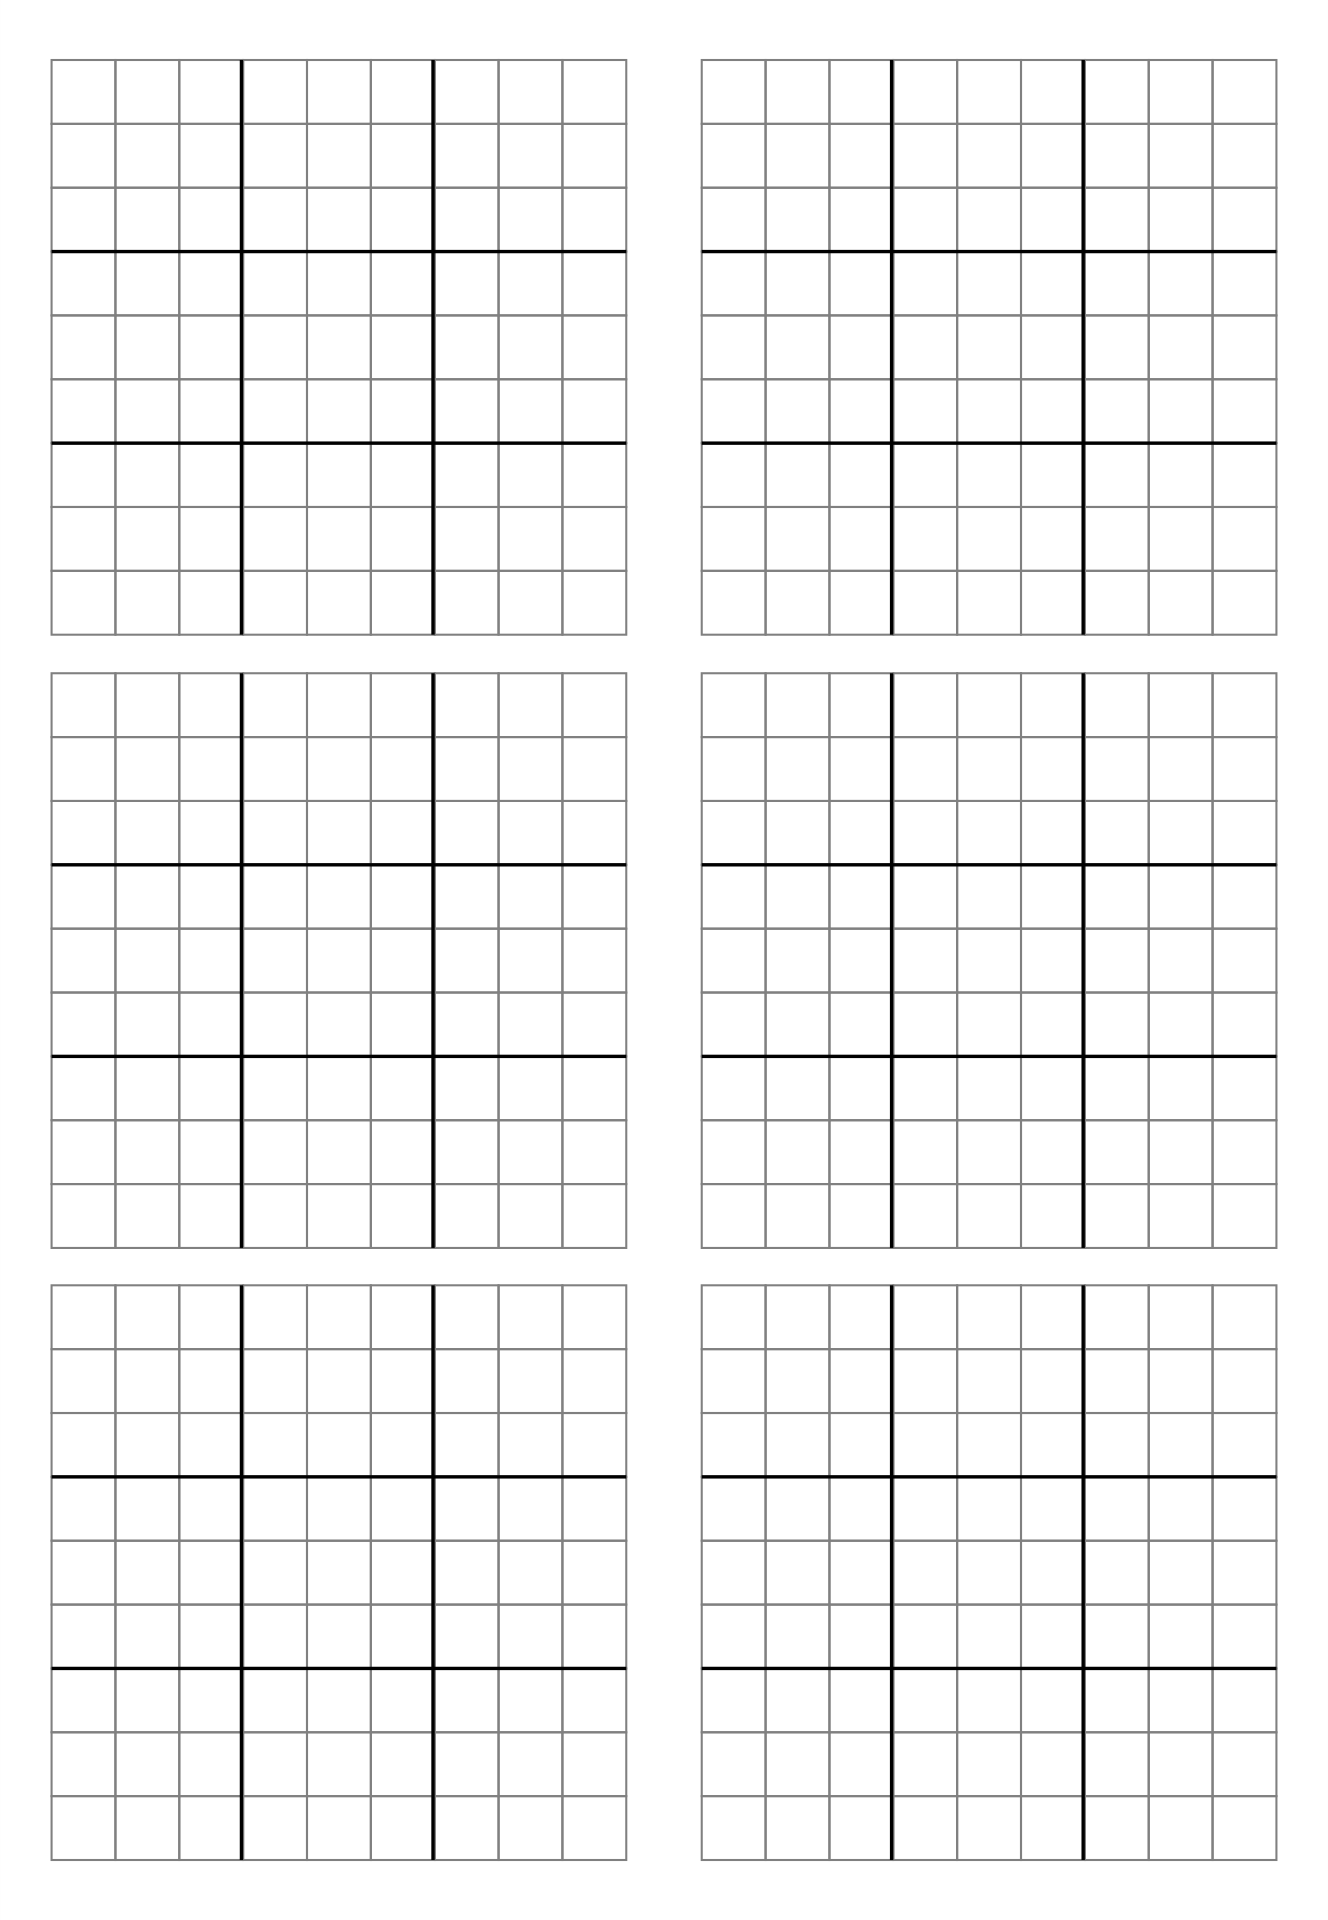 10-best-printable-blank-sudoku-grid-2-per-page-pdf-for-free-at-printablee